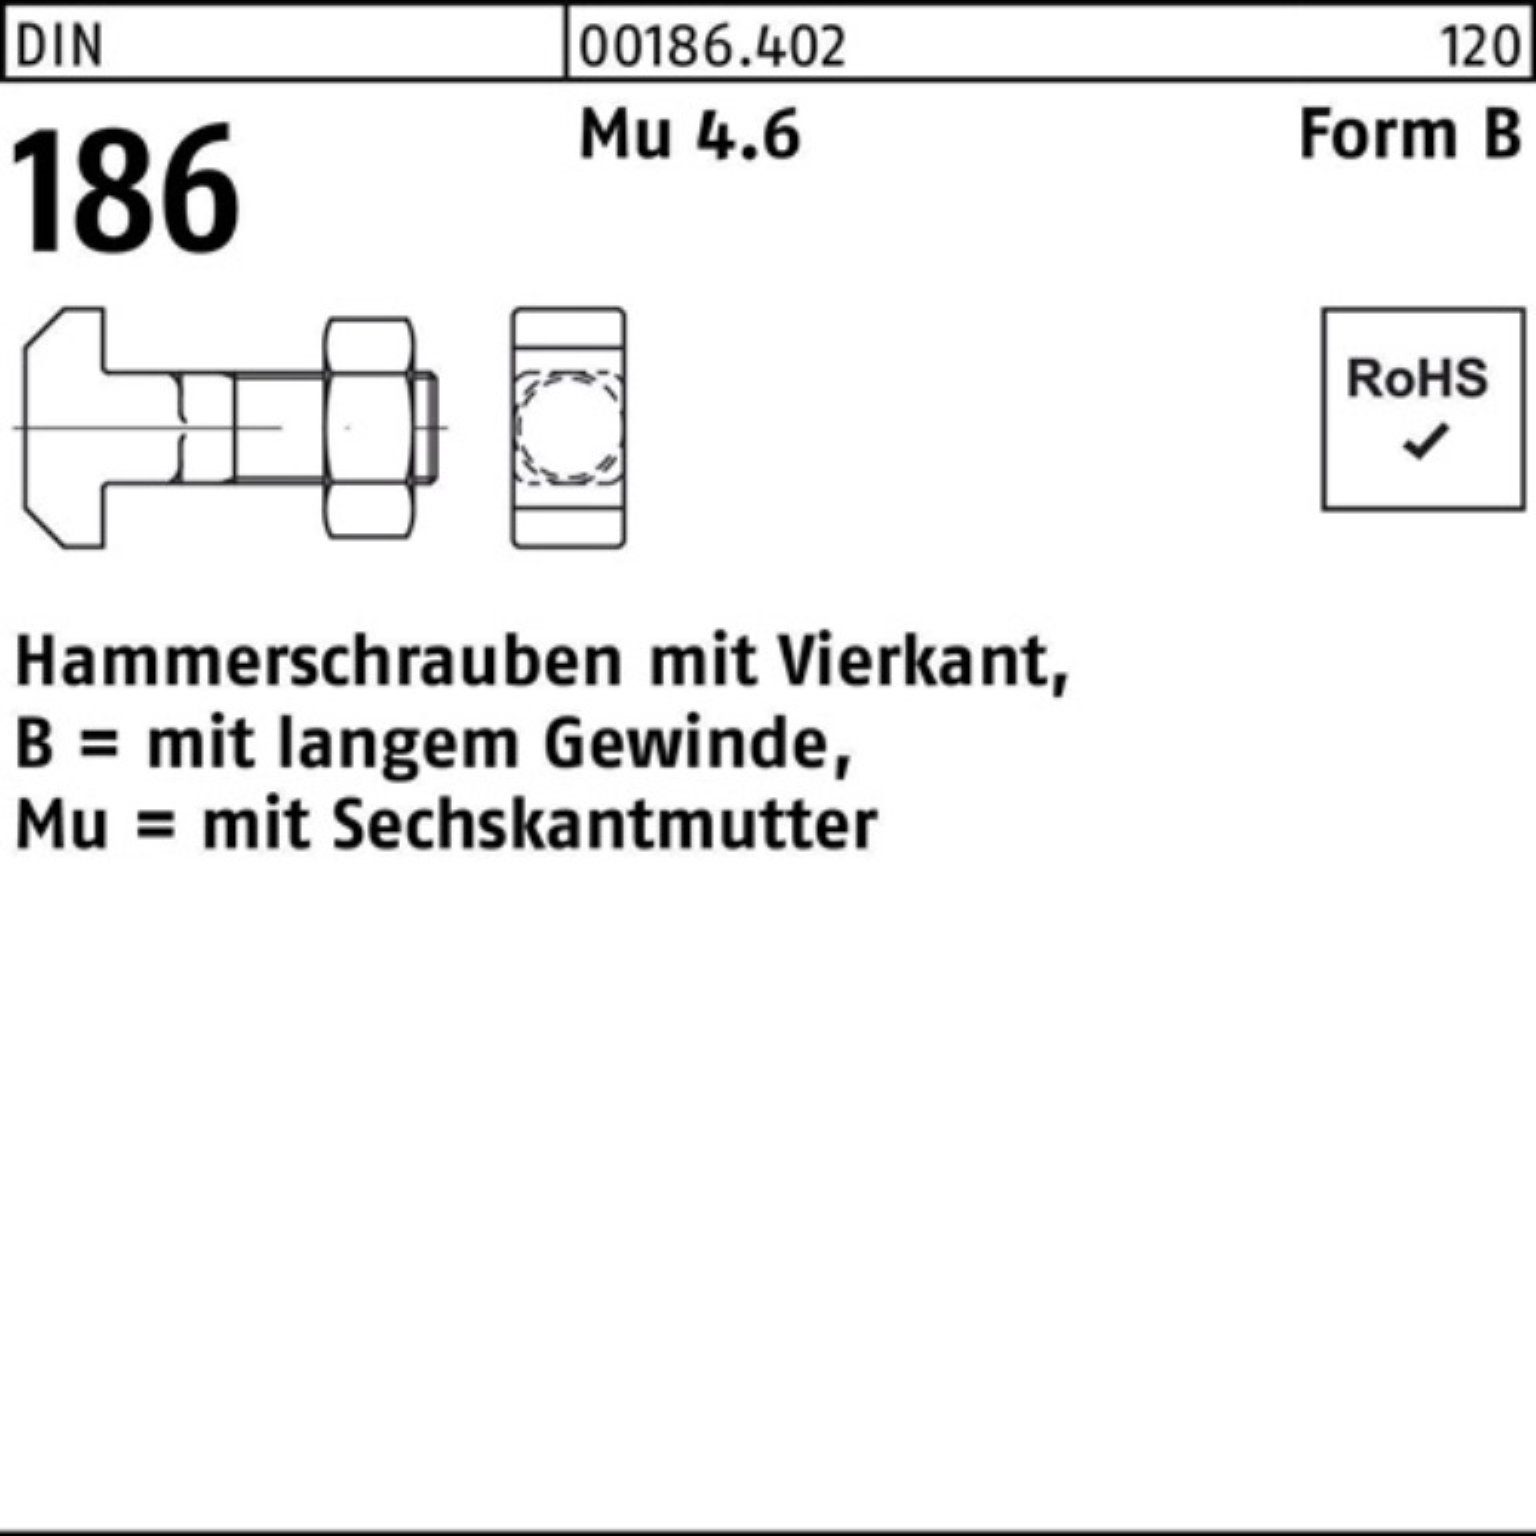 Reyher Schraube 100er FormB 16x 6-ktmutter 40 Vierkant DIN Hammerschraube BM Pack 186